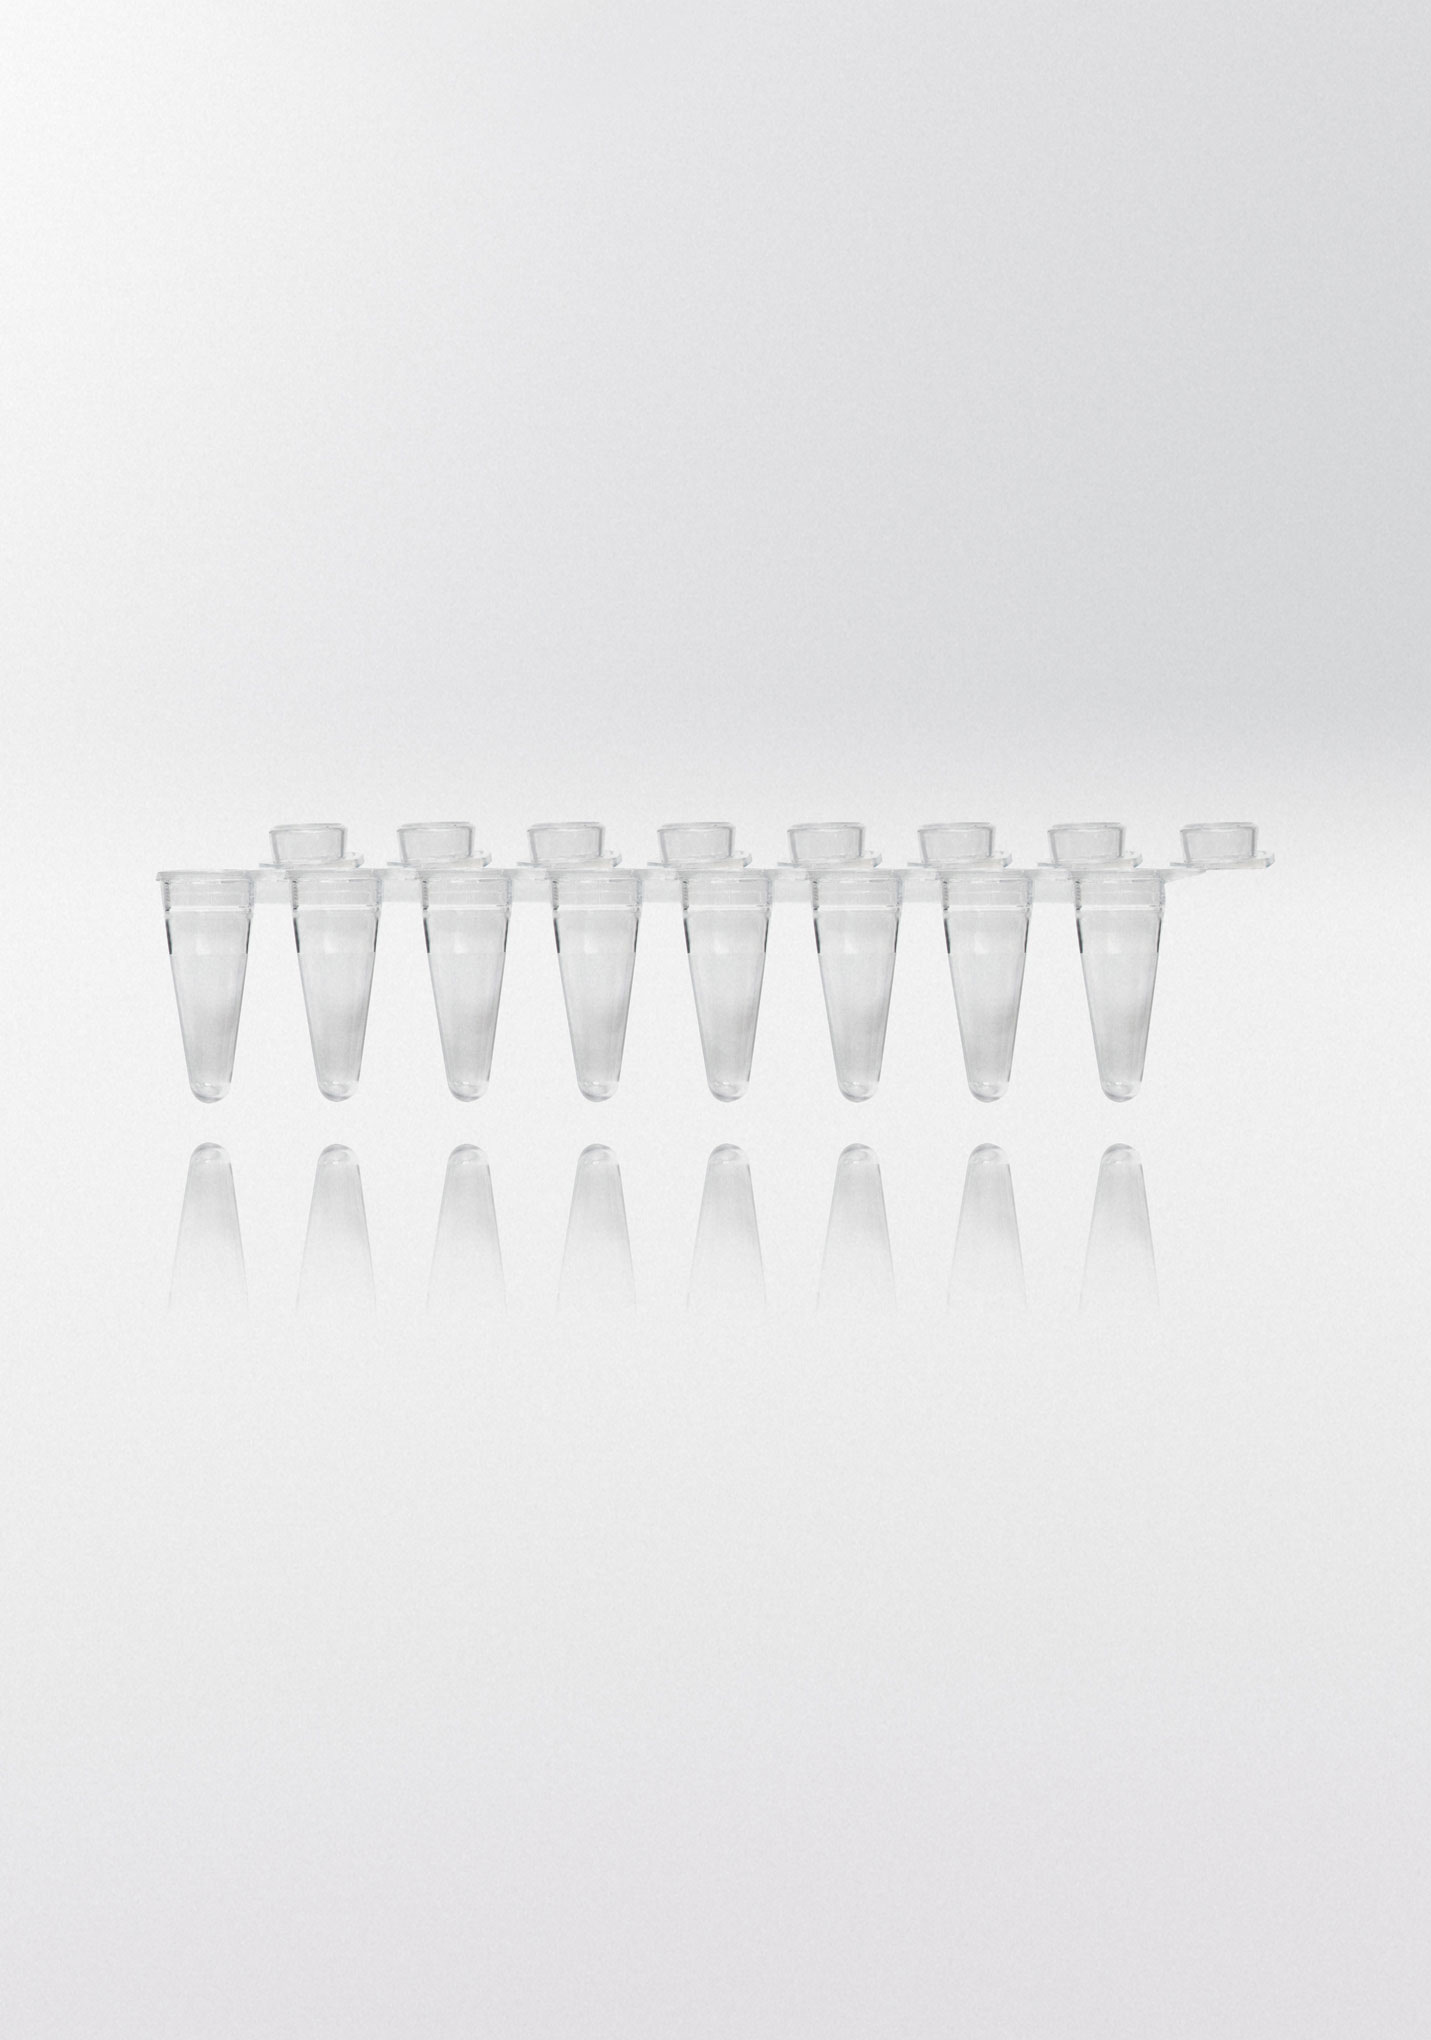 Tiras de tubos para PCR. NERBE-PLUS. Capacidad (ml): 0,1. Resist. centrif. (g): 20000. Tapón: Plano. Color tubo/tapón: Transparente/ Transparente. Esterilidad: PCR Ready. Low profile: Sí. qPCR: Sí